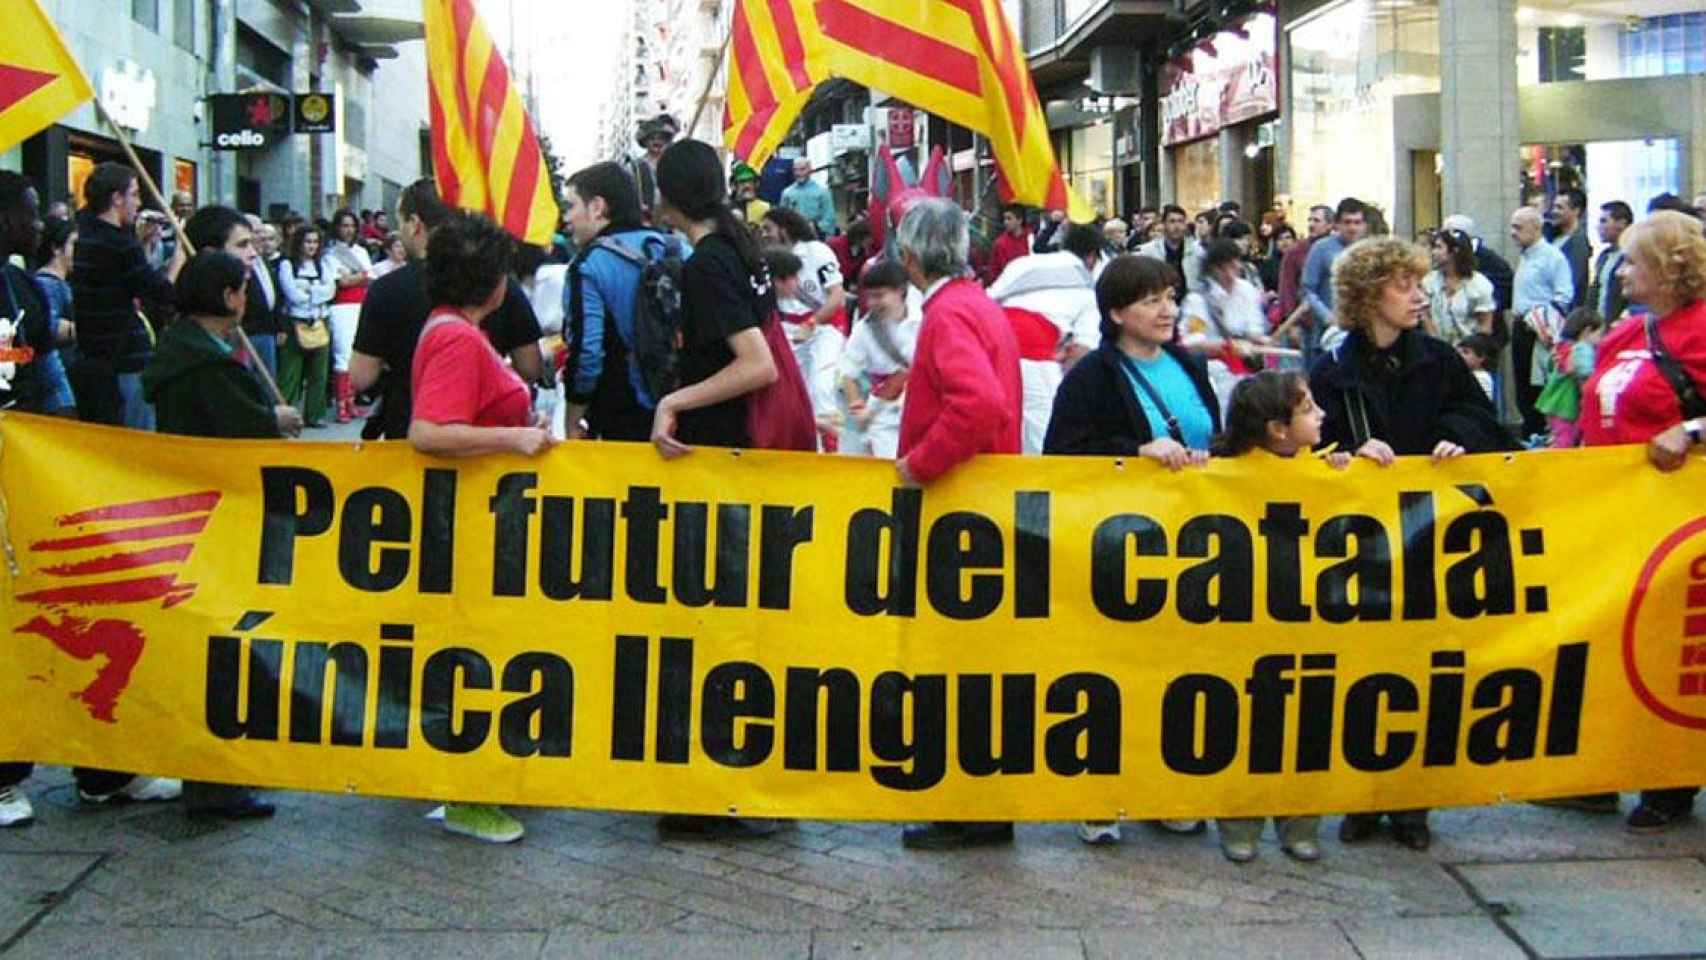 Manifestación a favor del catalán como única lengua oficial en Cataluña excluyendo el español / CG